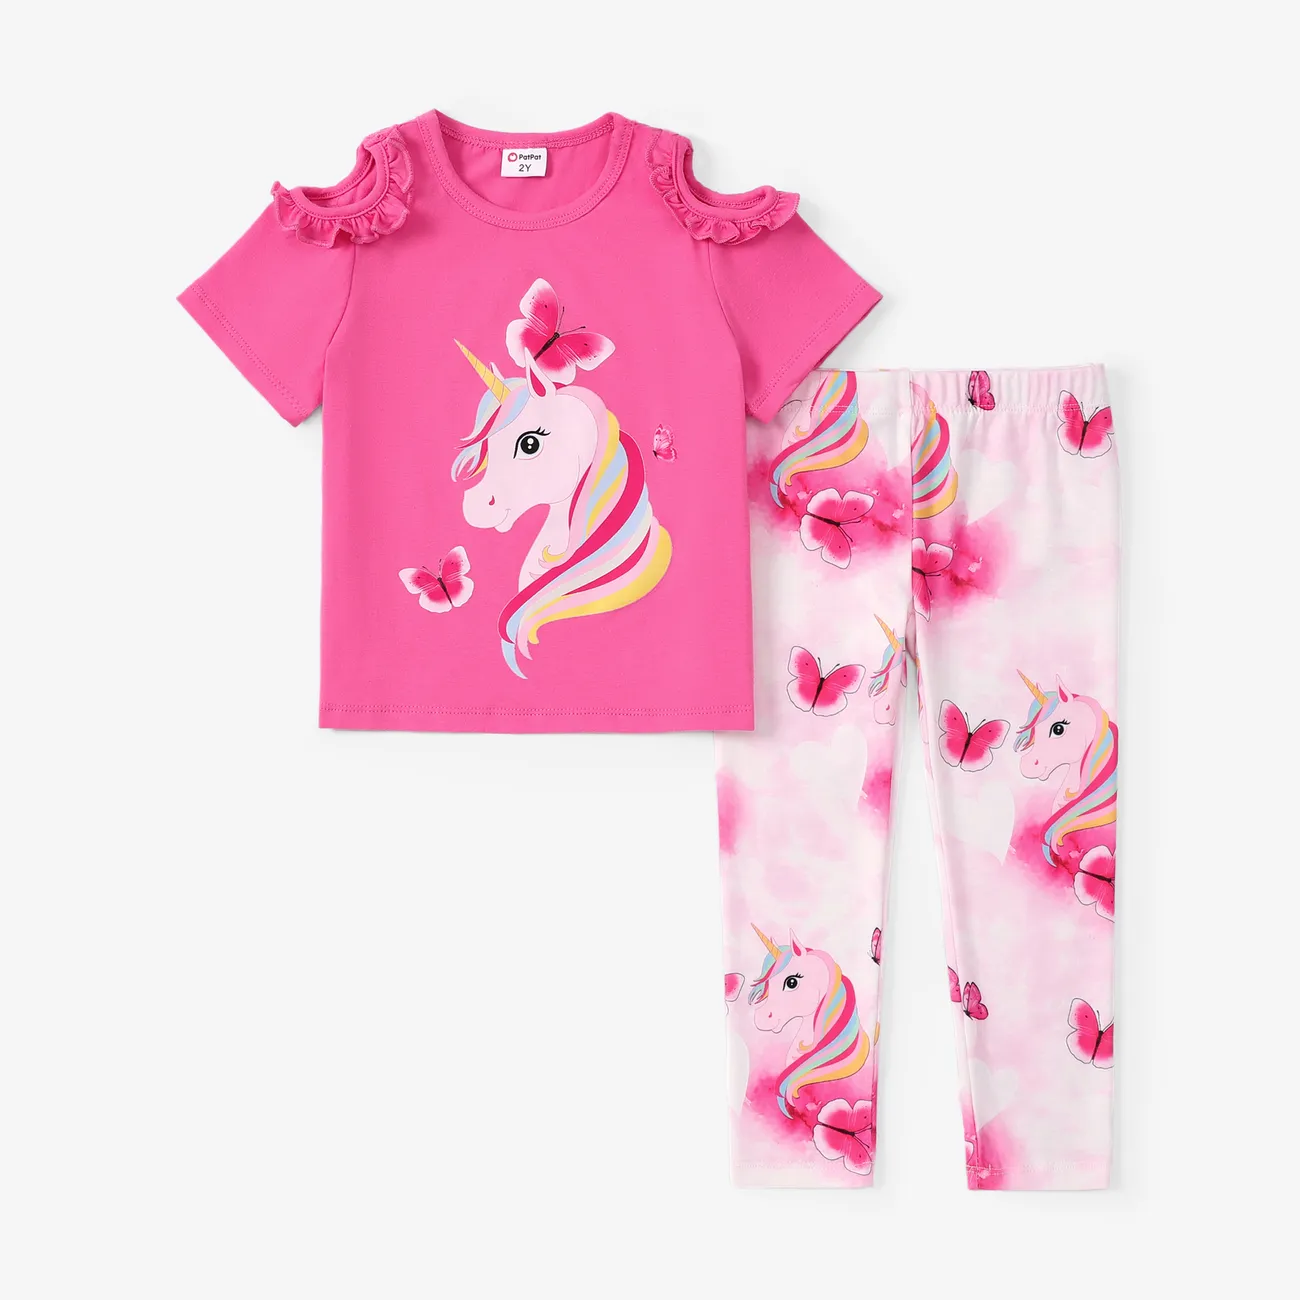 蹣跚學步/小女孩 2 件裝甜美獨角獸印花荷葉邊 T 恤和緊身褲套裝 深粉色 big image 1